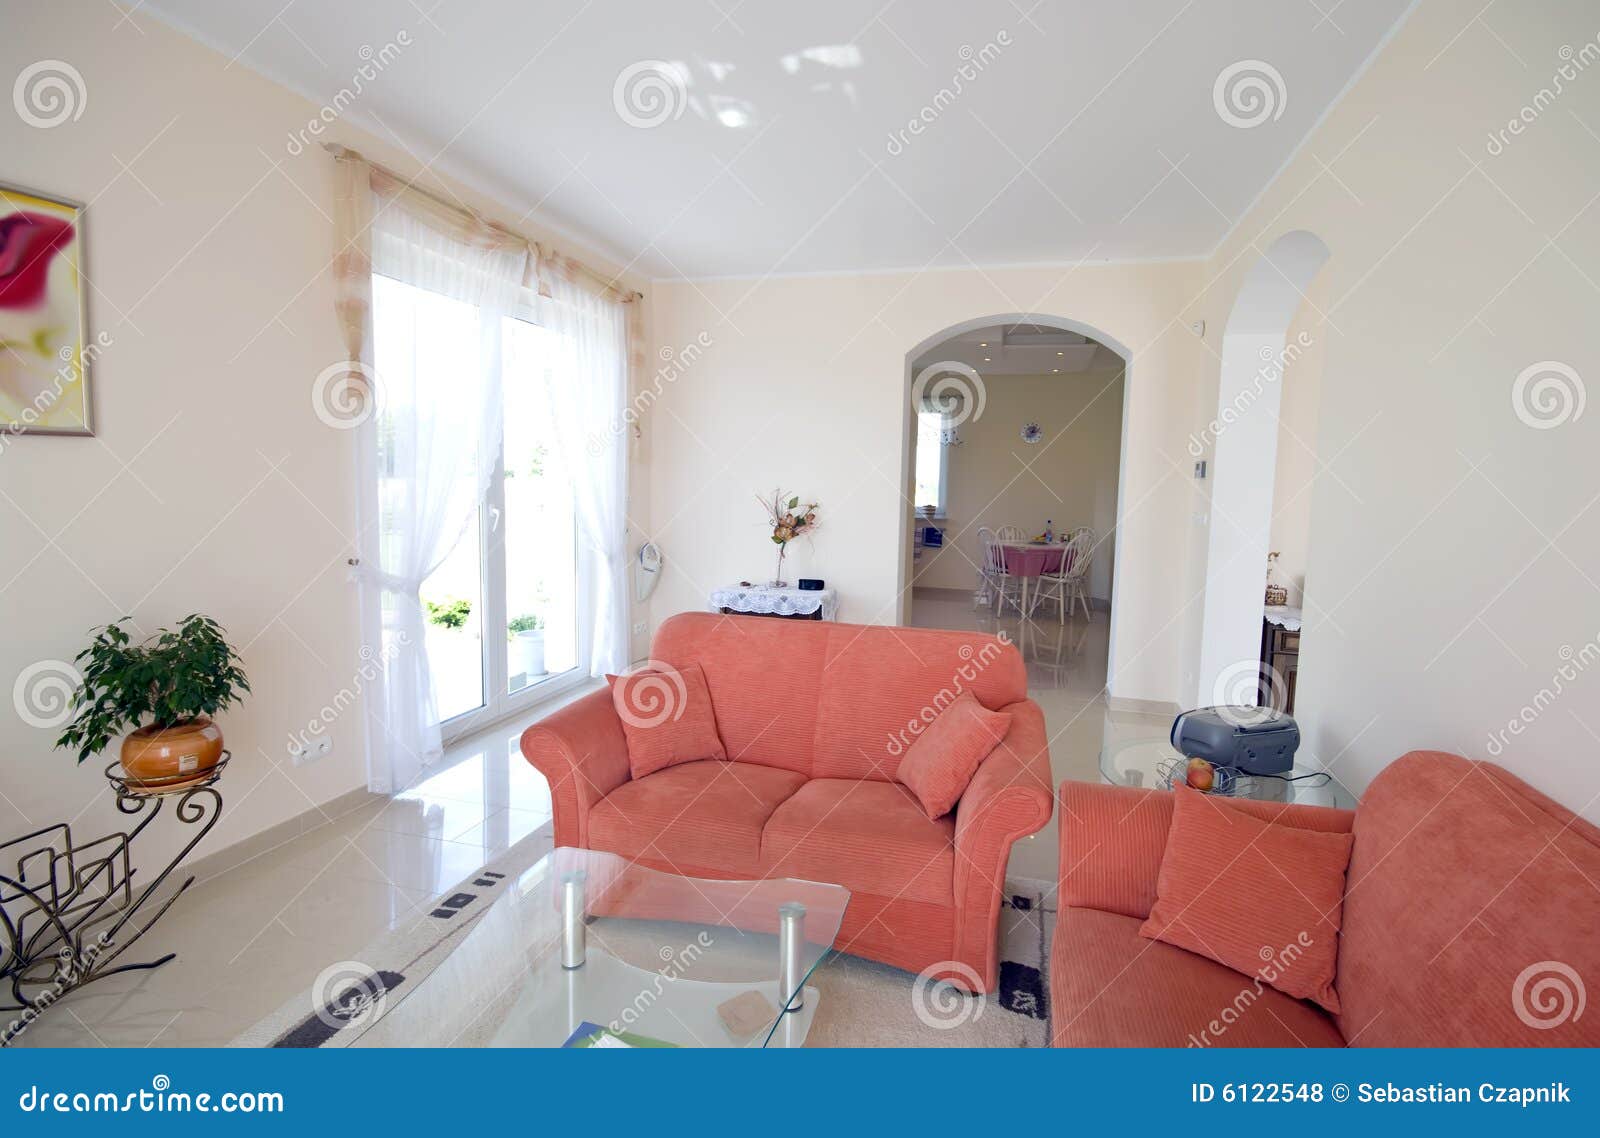 tv room with orange sofas